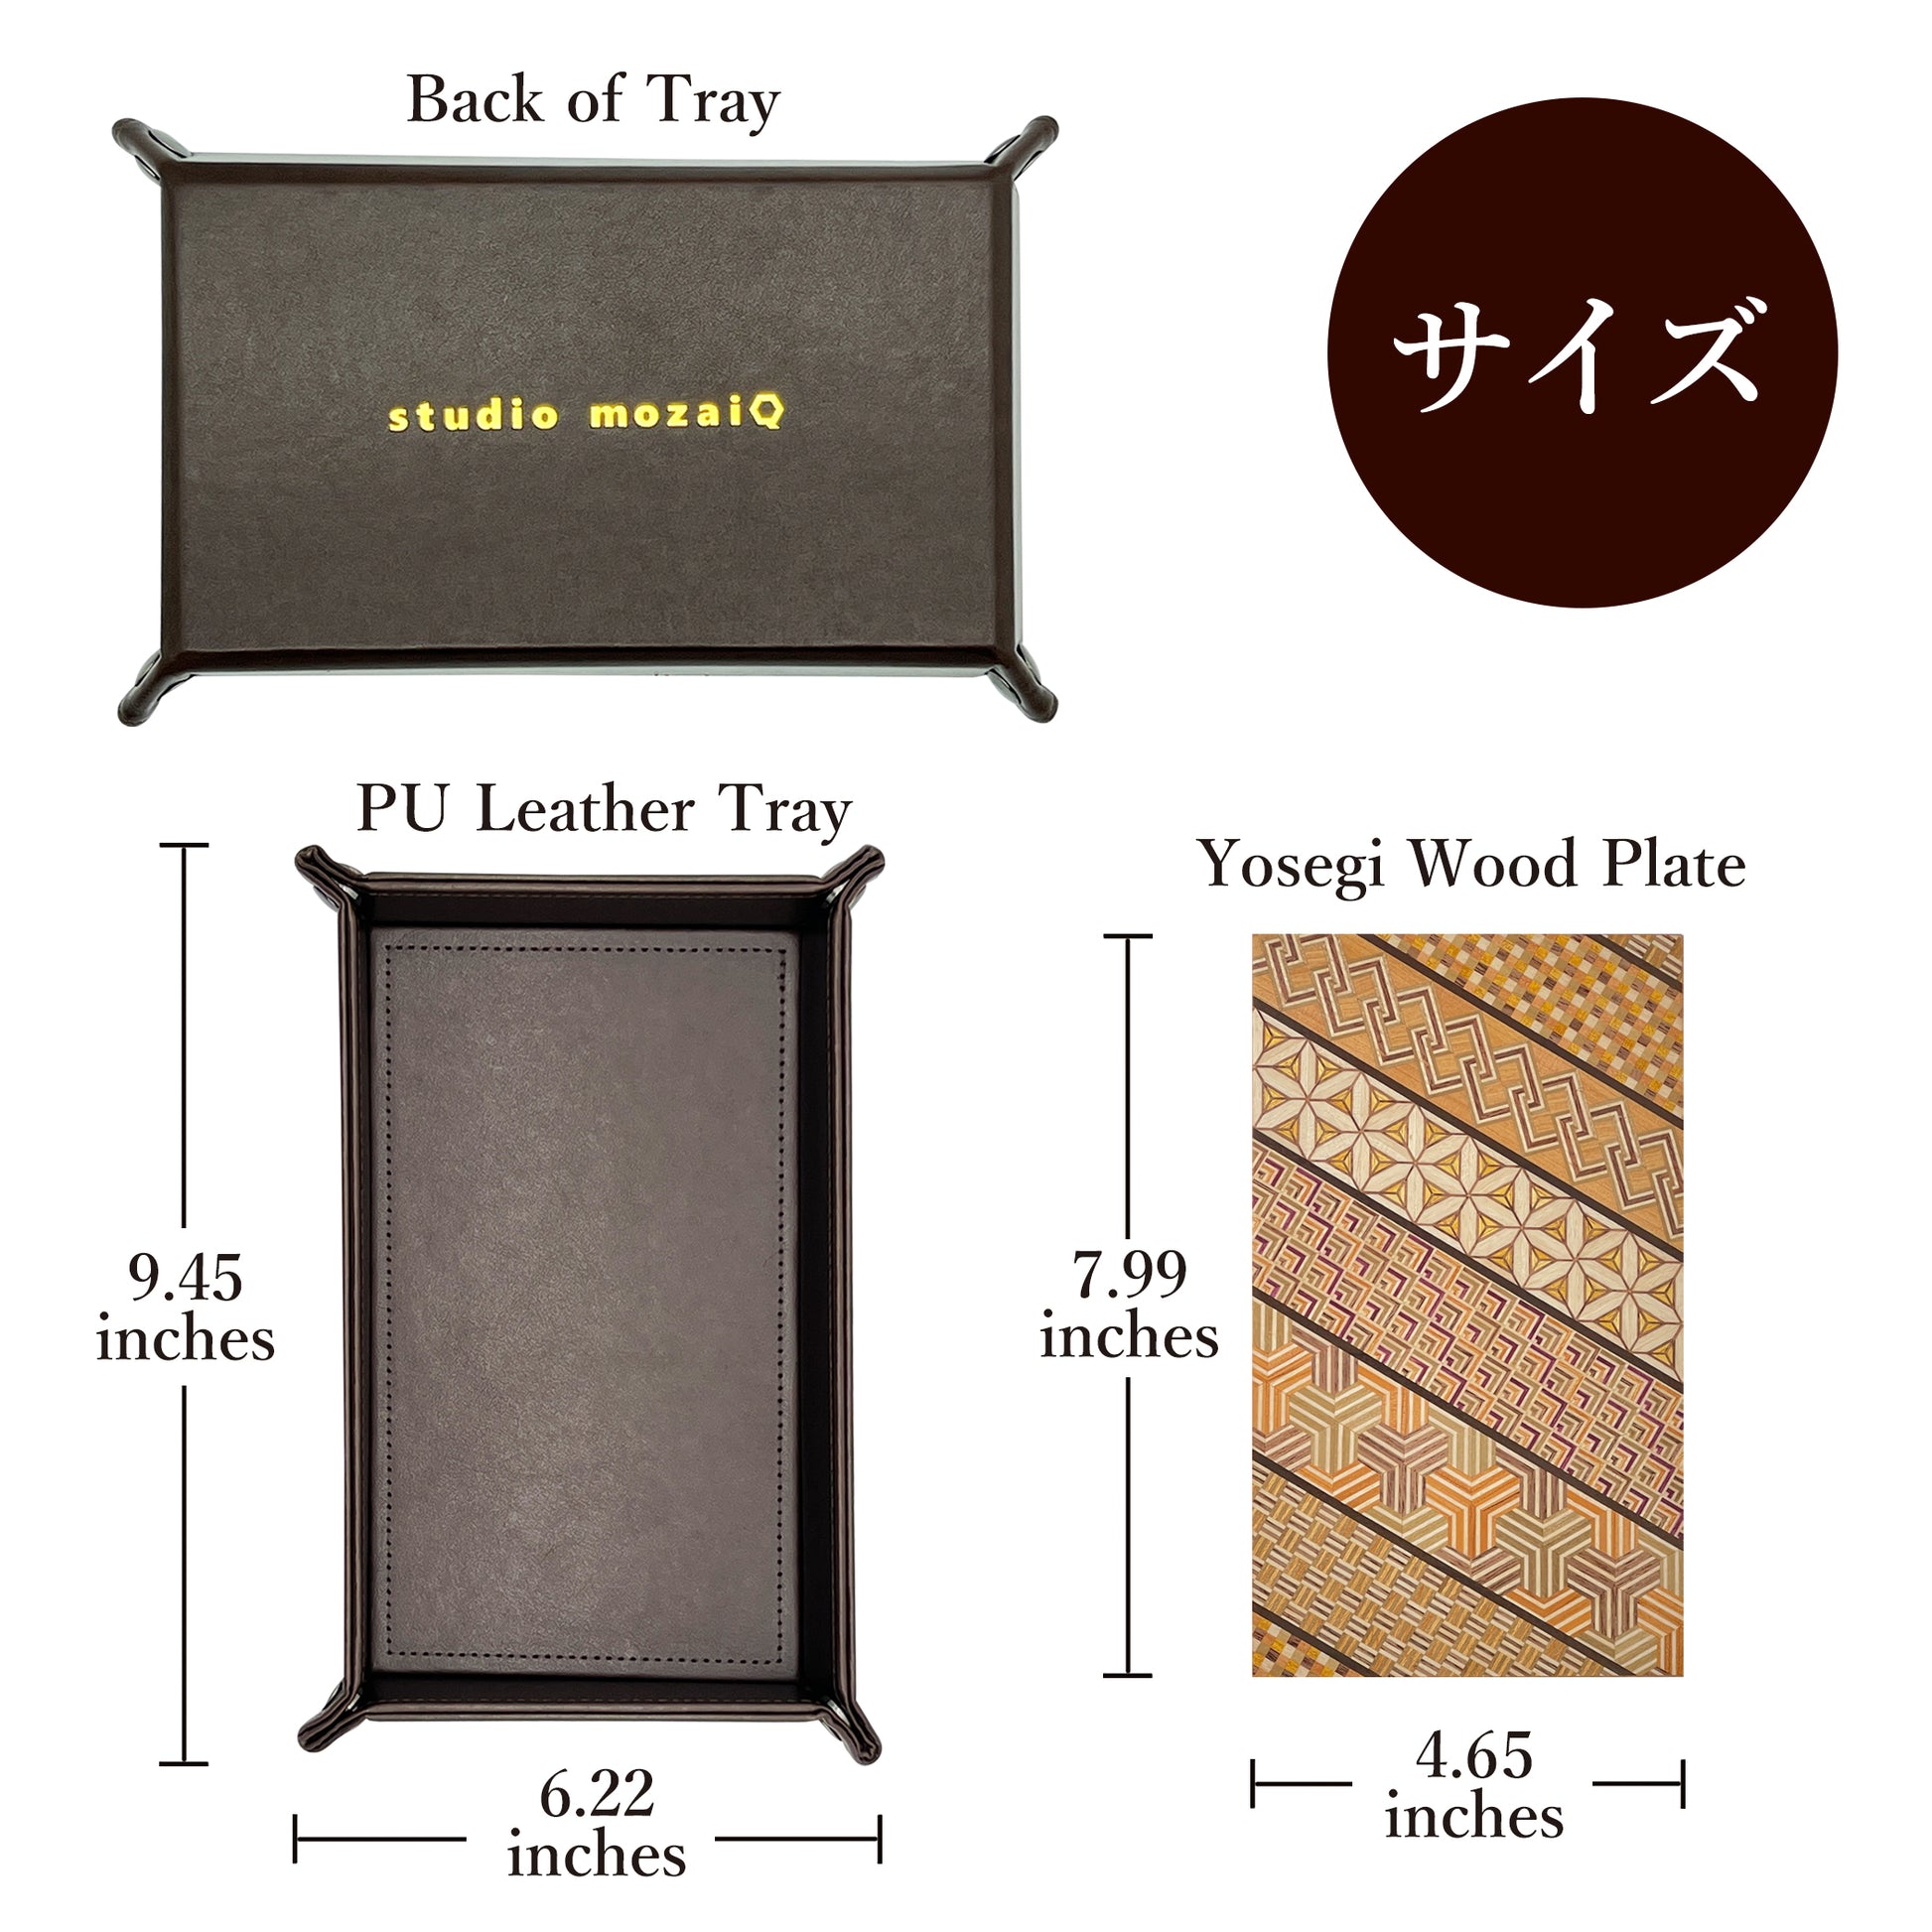 Size of Yosegi PU Leather Tray